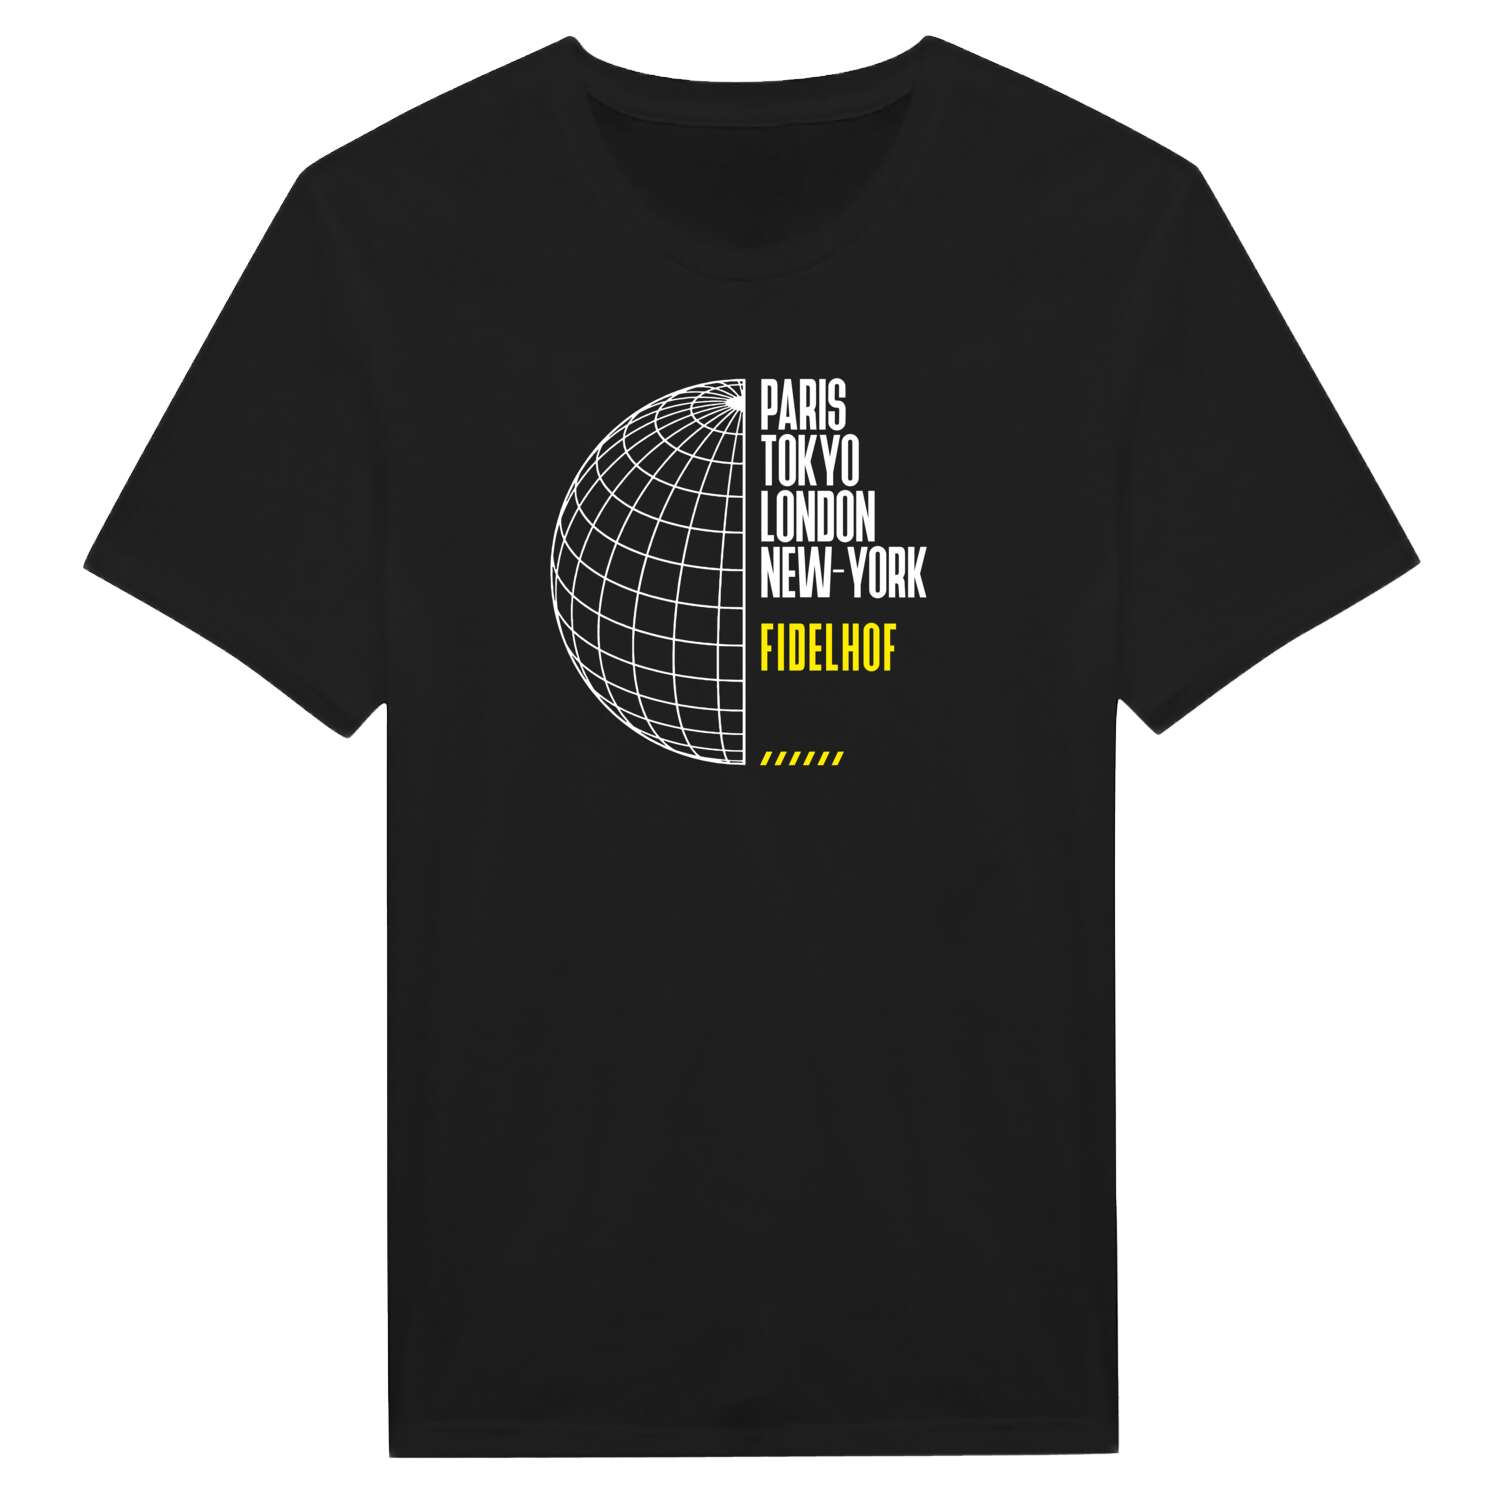 Fidelhof T-Shirt »Paris Tokyo London«